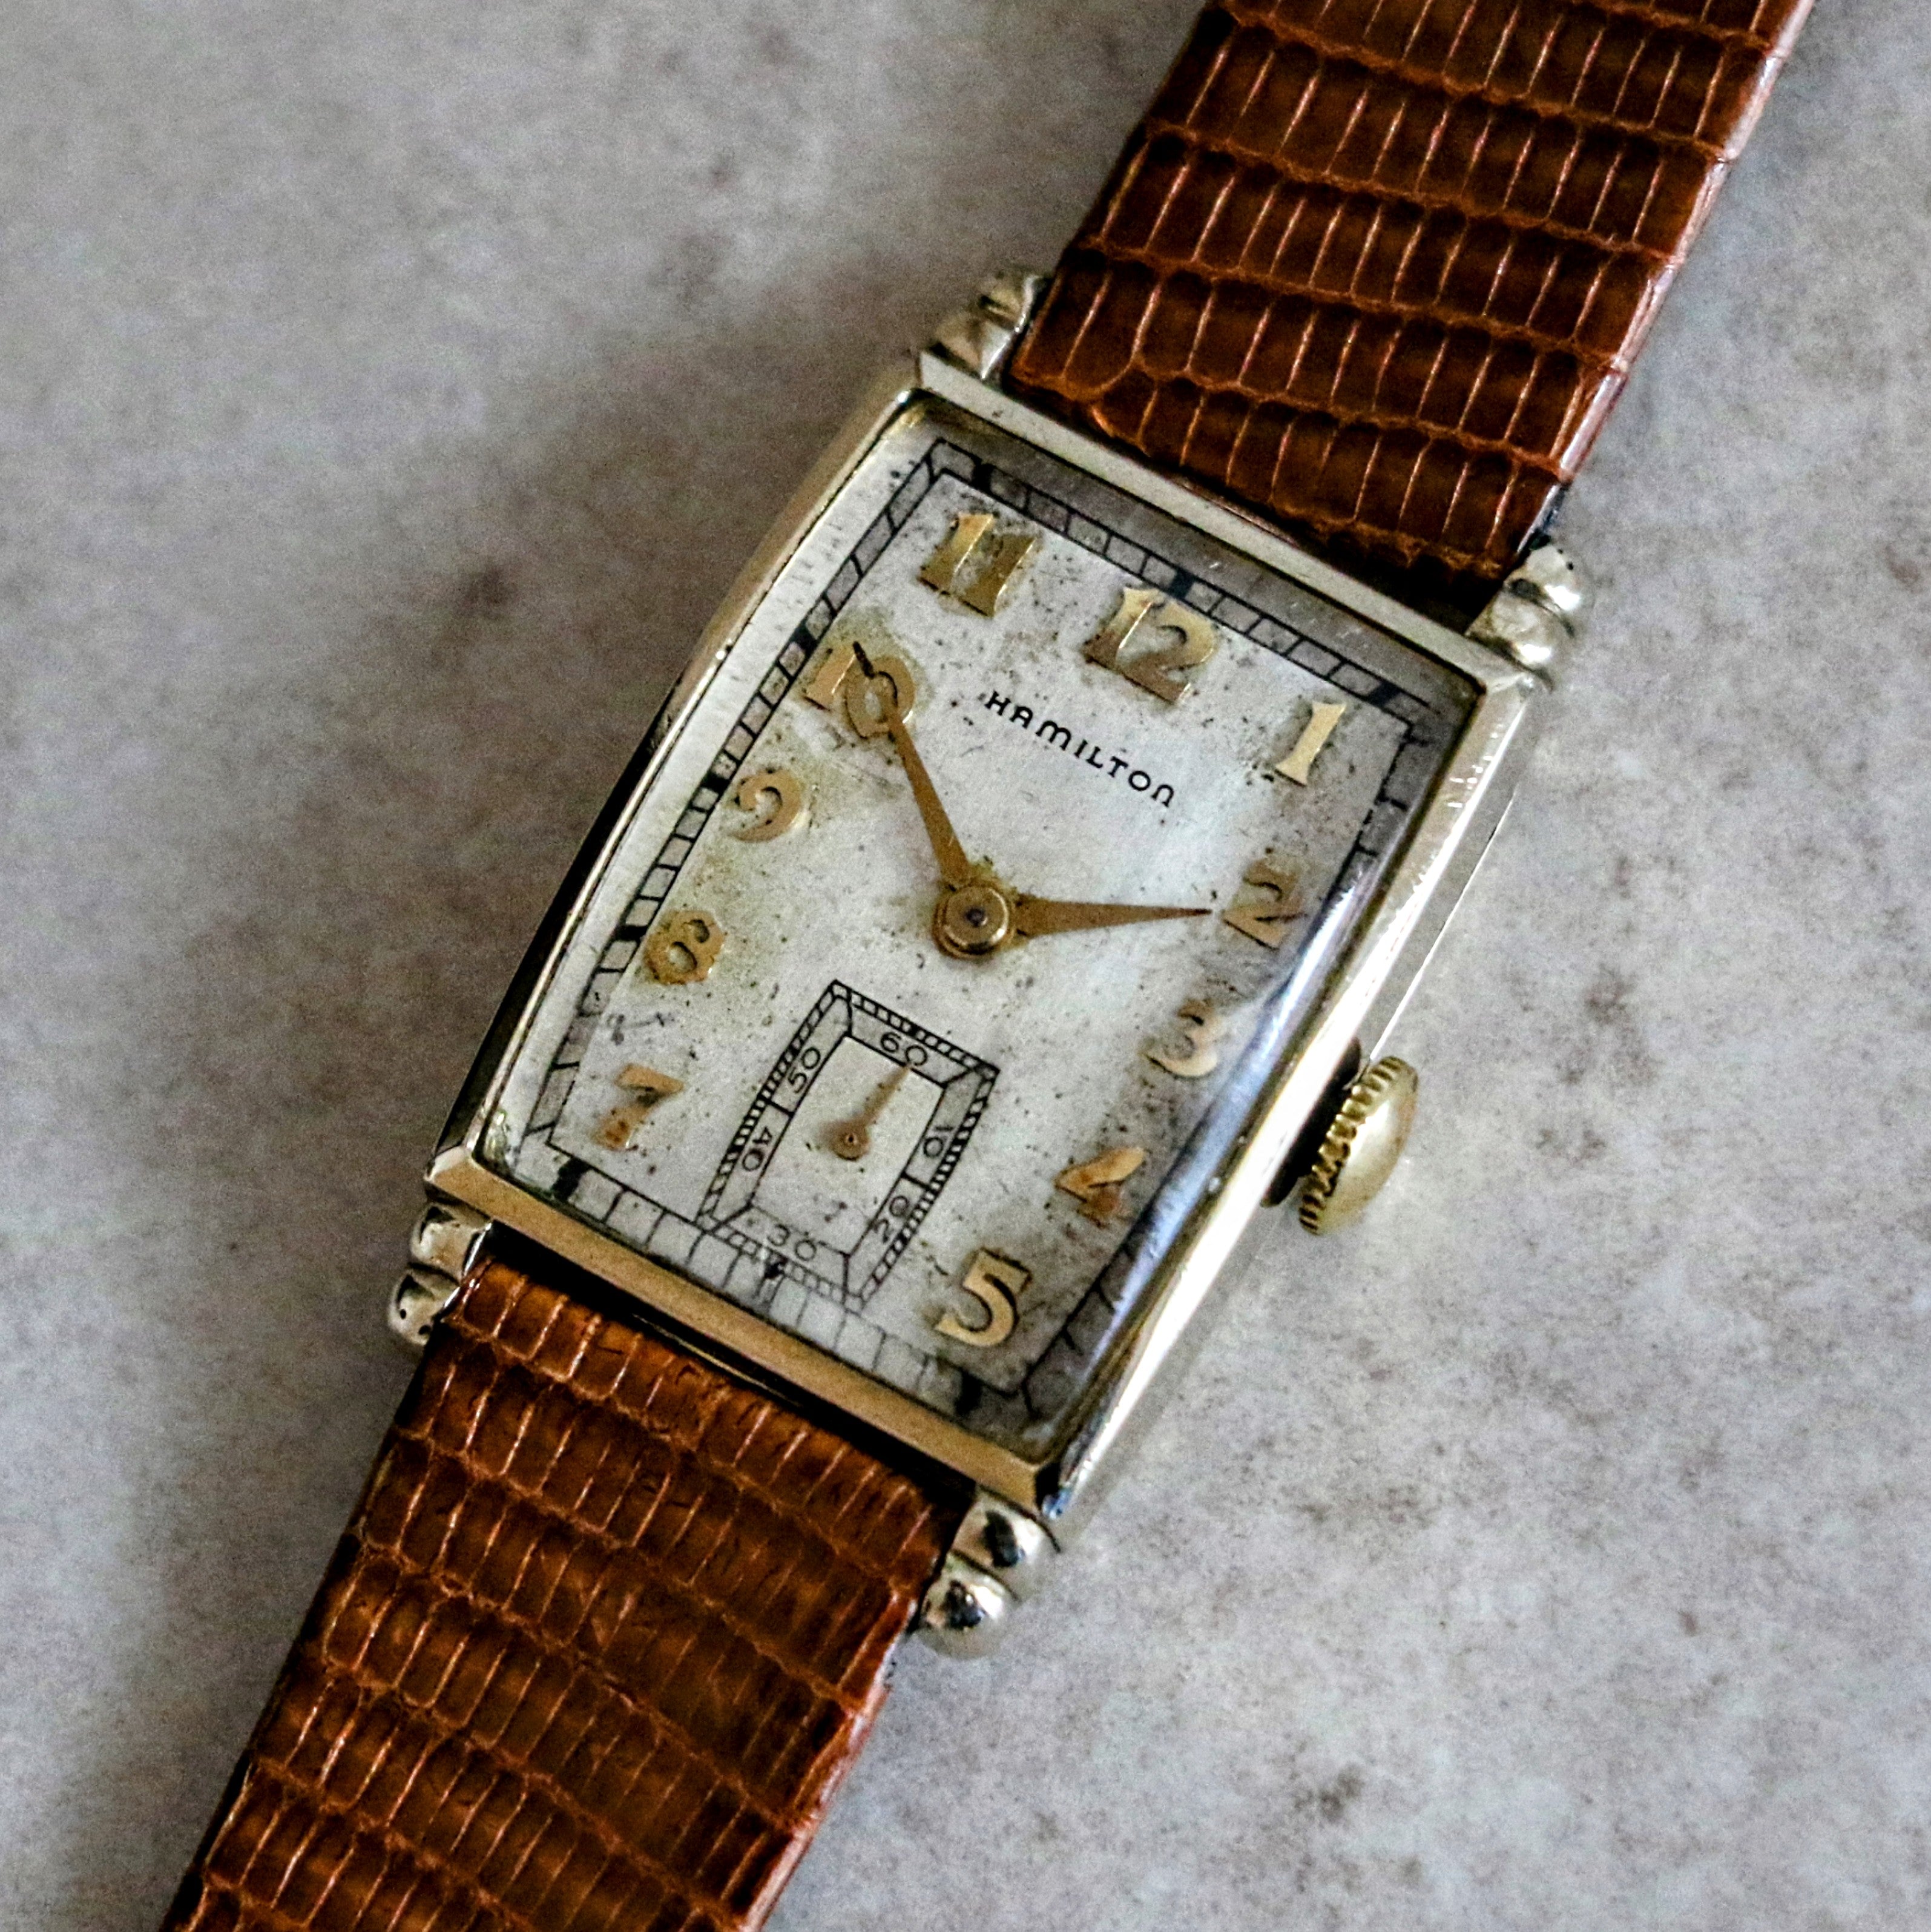 1946 HAMILTON Myron Wristwatch 10K Yellow G.F. Wristwatch U.S.A. Grade 980 Watch